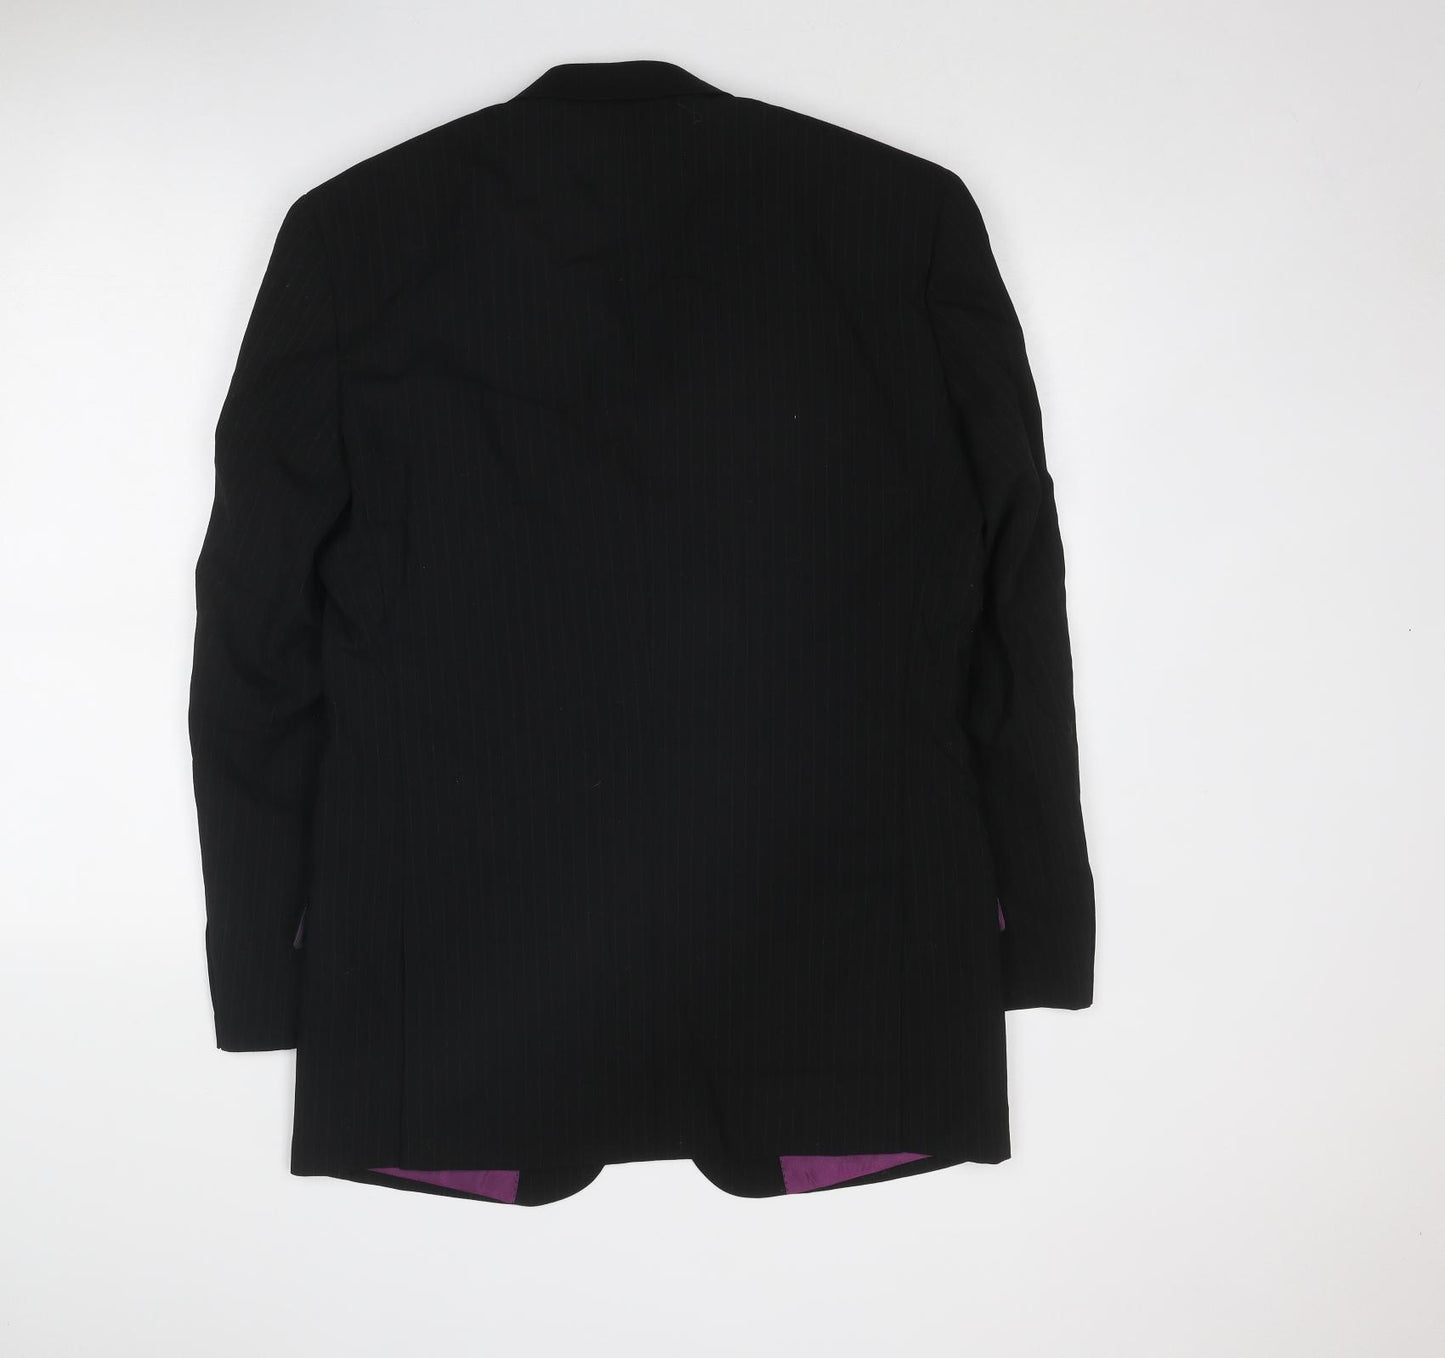 Skopes Mens Black Striped Wool Jacket Suit Jacket Size 38 Regular